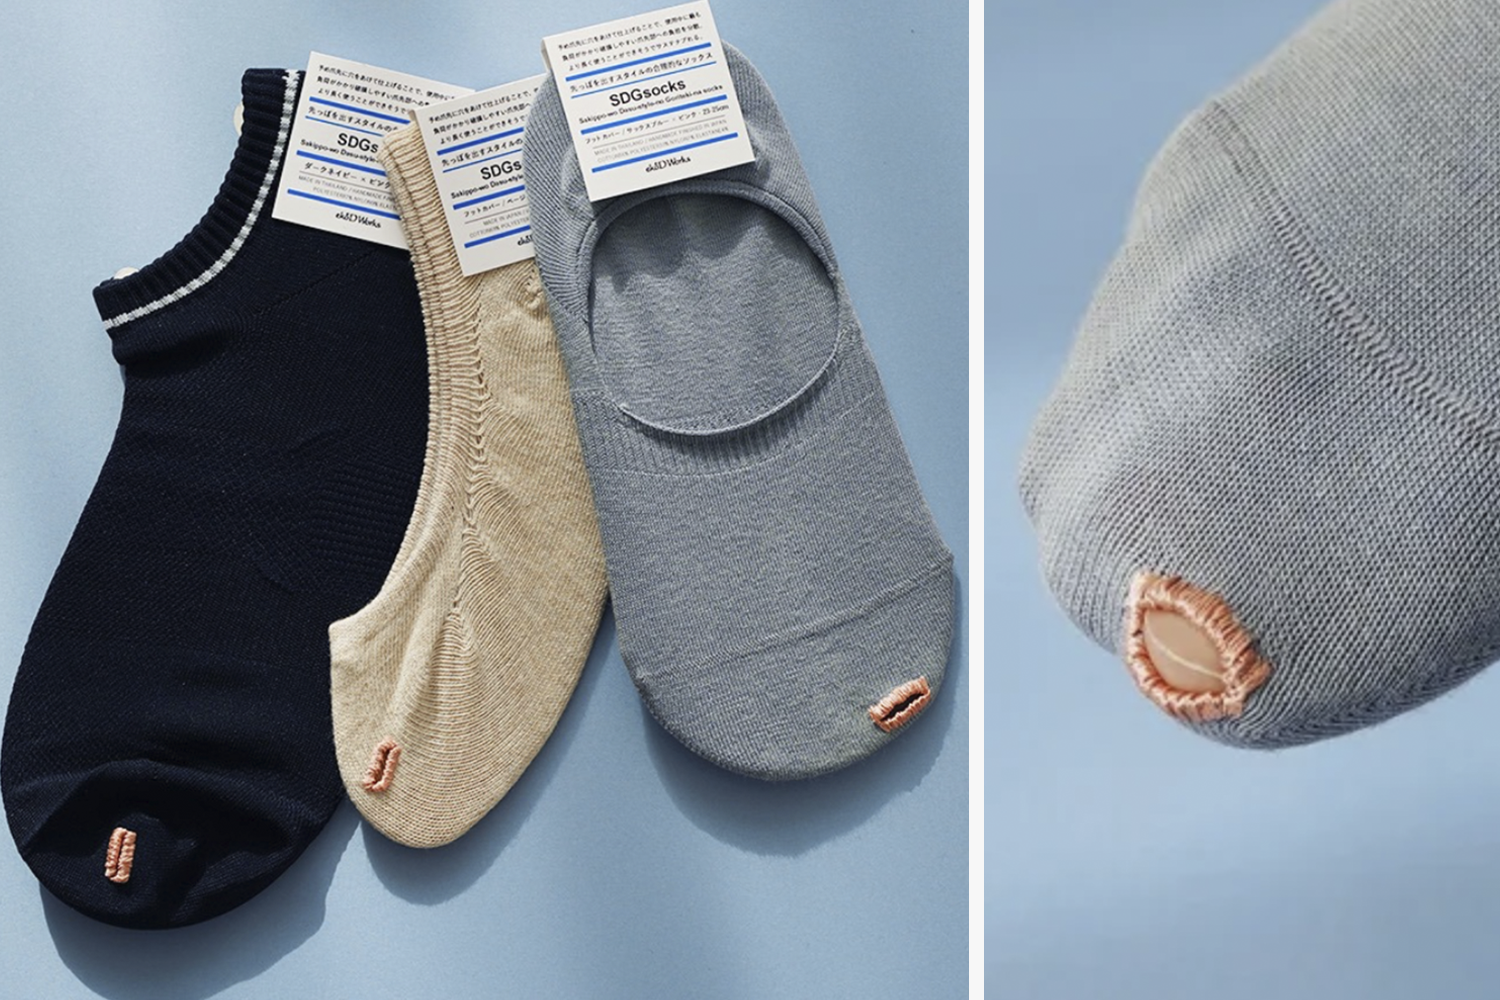 Как японский бренд решил проблему дырявых носков - Афиша Daily